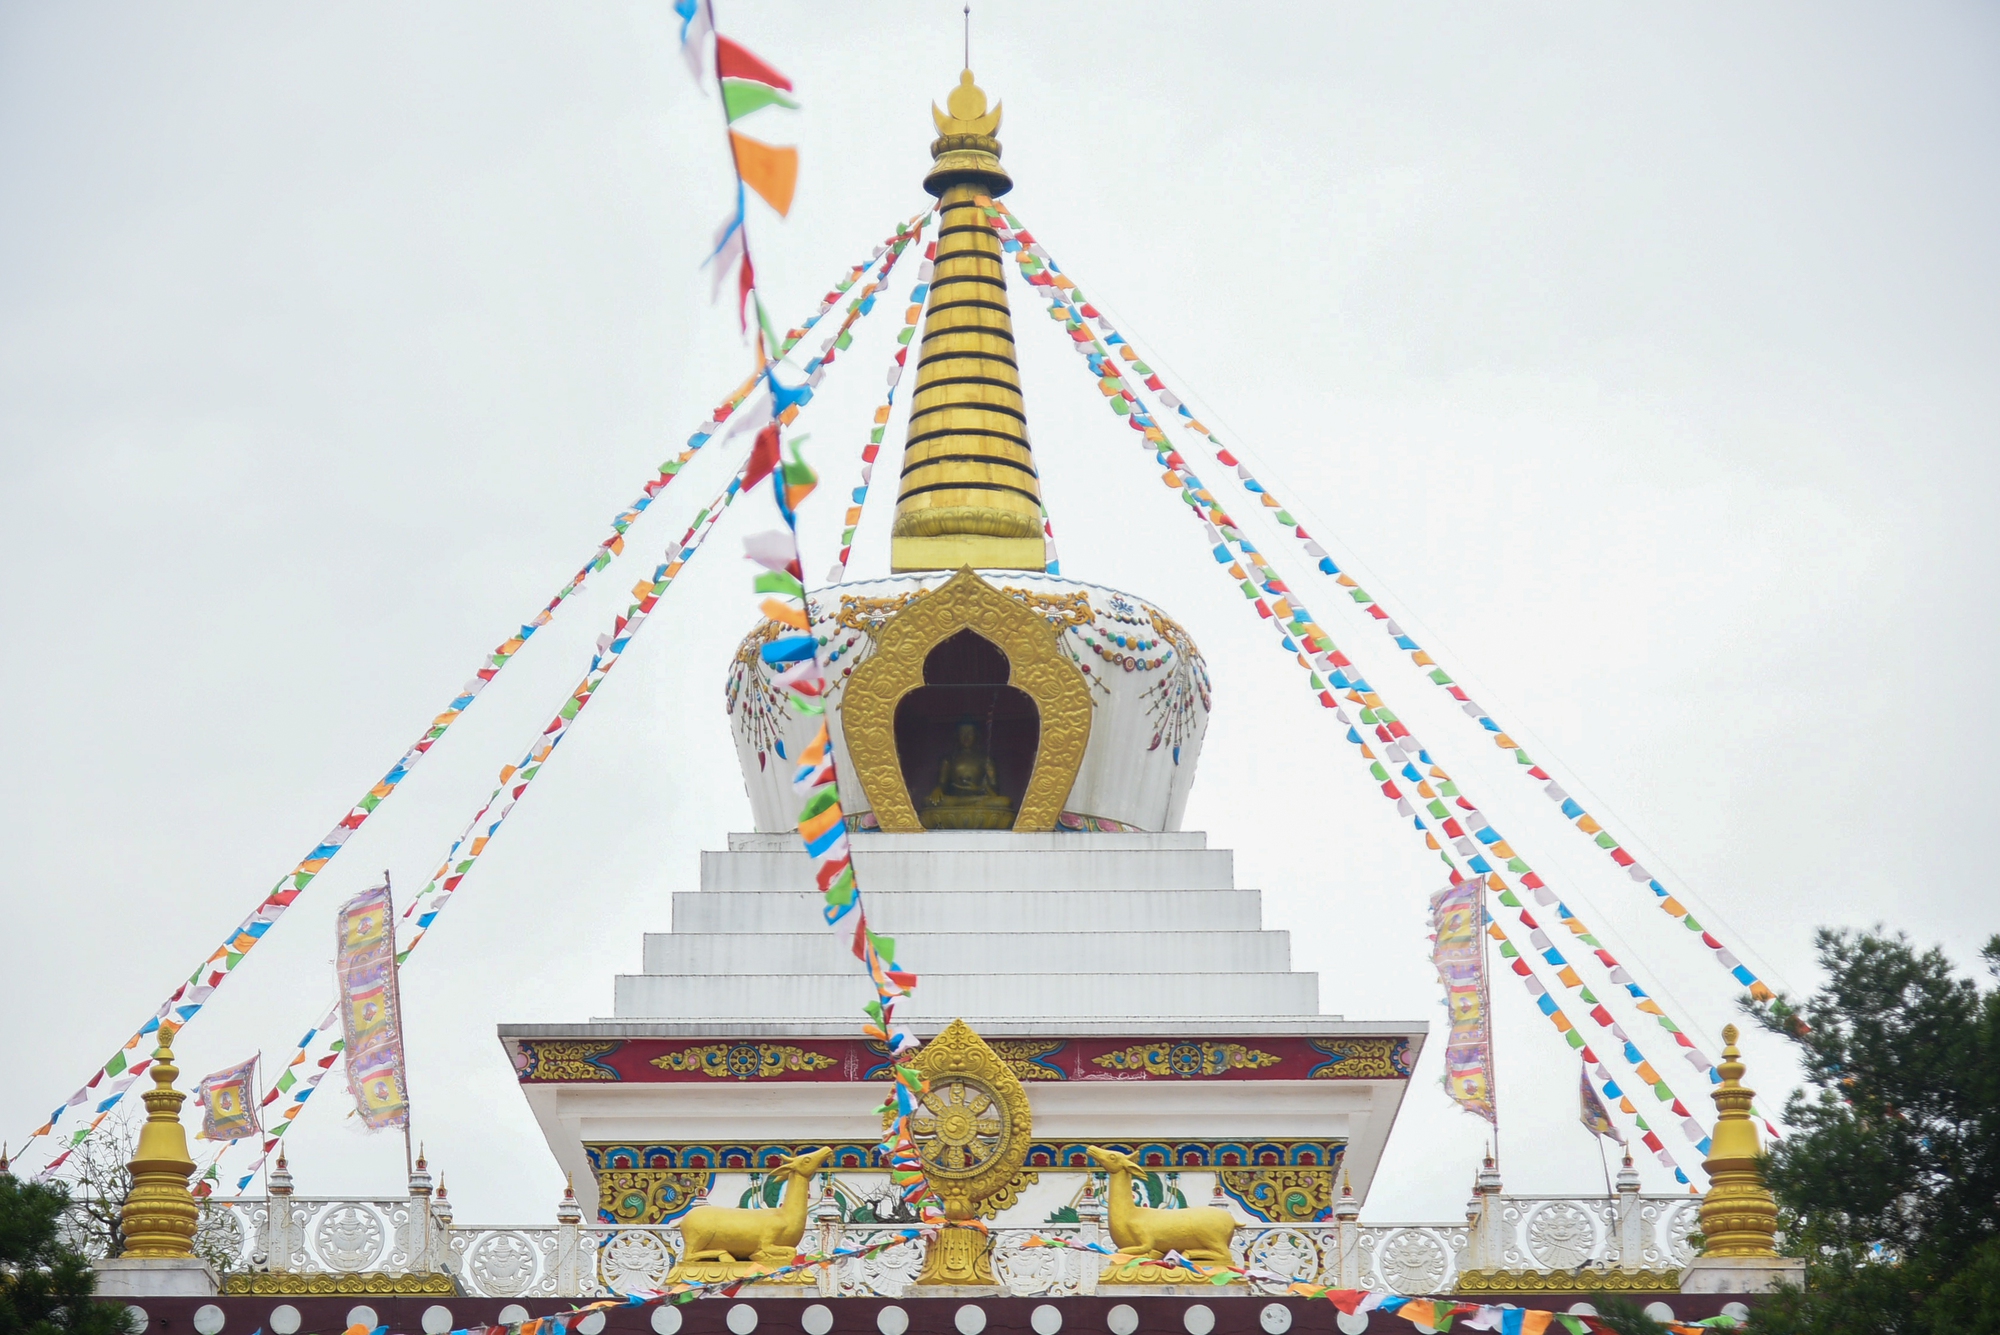 Khám phá ngôi chùa Tây Tạng 600 năm tuổi độc nhất tại Hà Nội - Ảnh 10.